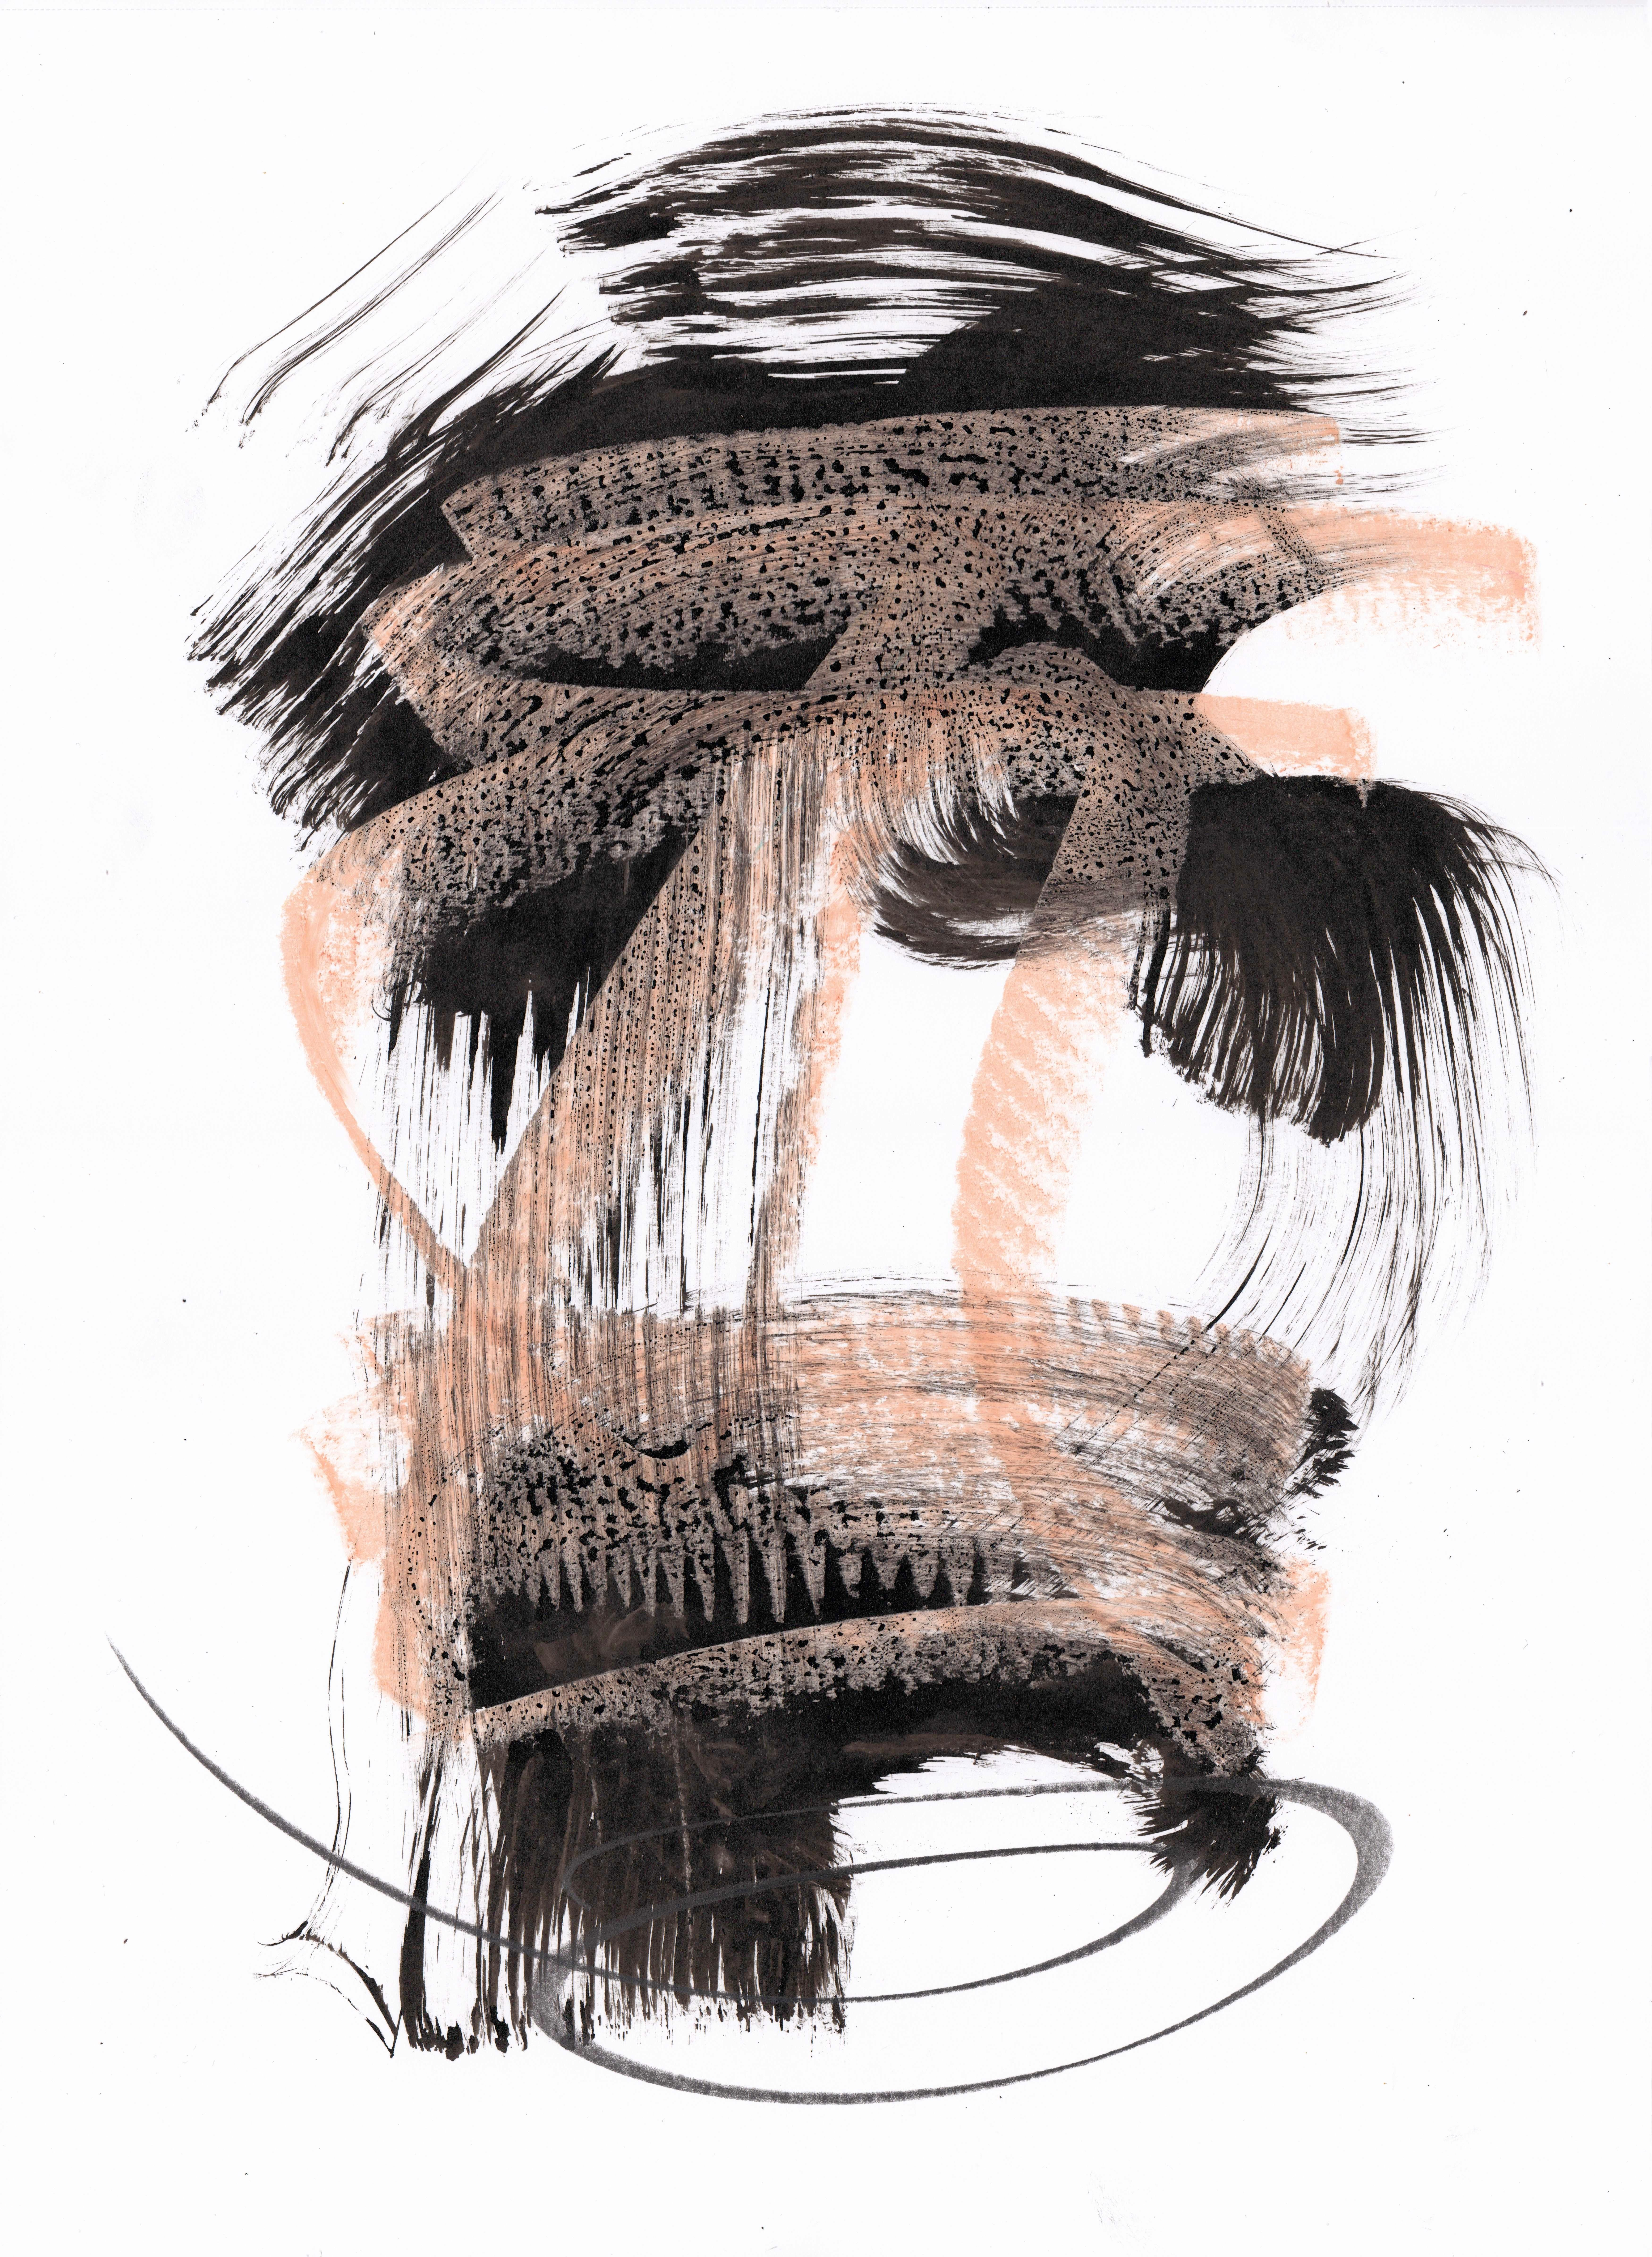 Sve Gri Abstract Drawing – Expressionistische abstrakte Zeichnung. Freie Assoziation